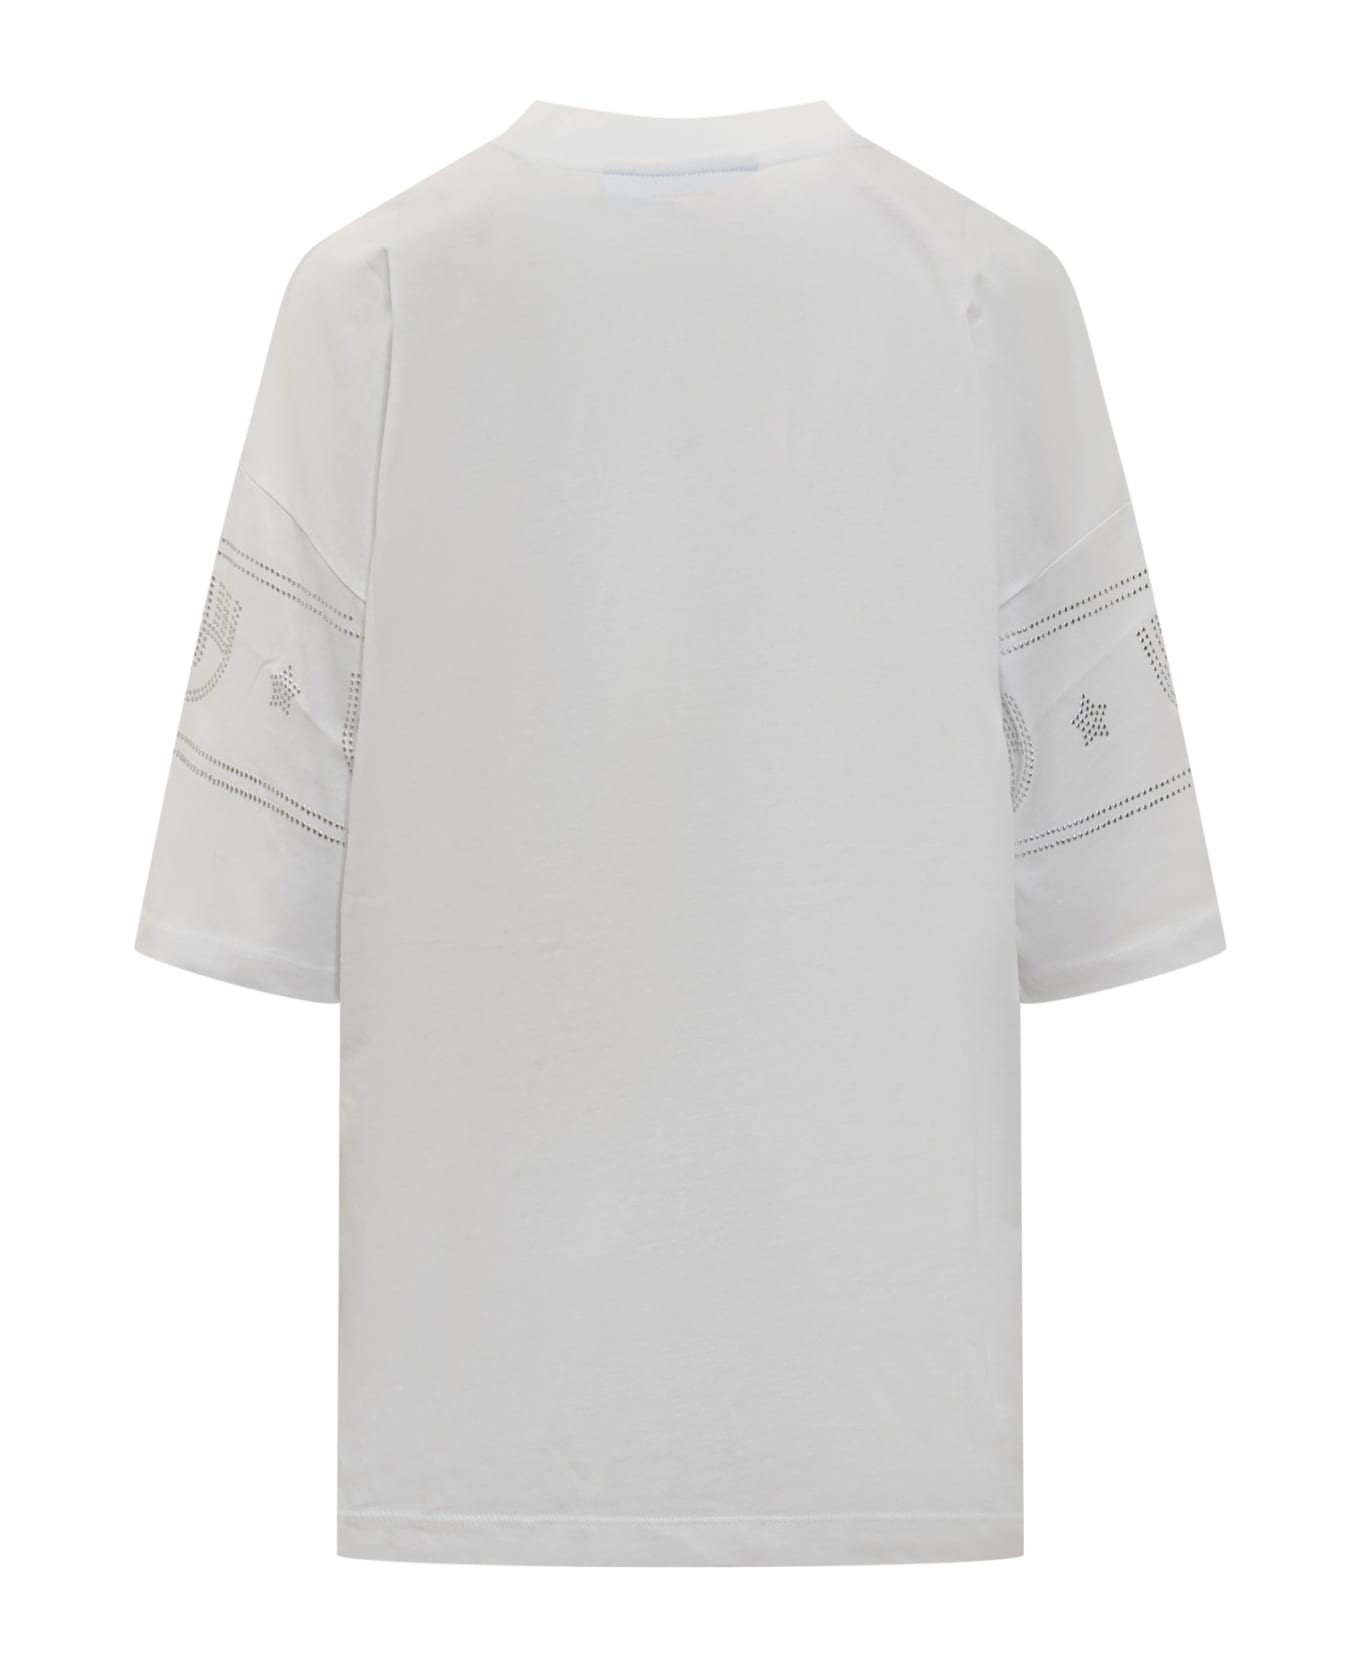 Chiara Ferragni Logomania 640 T-shirt - White